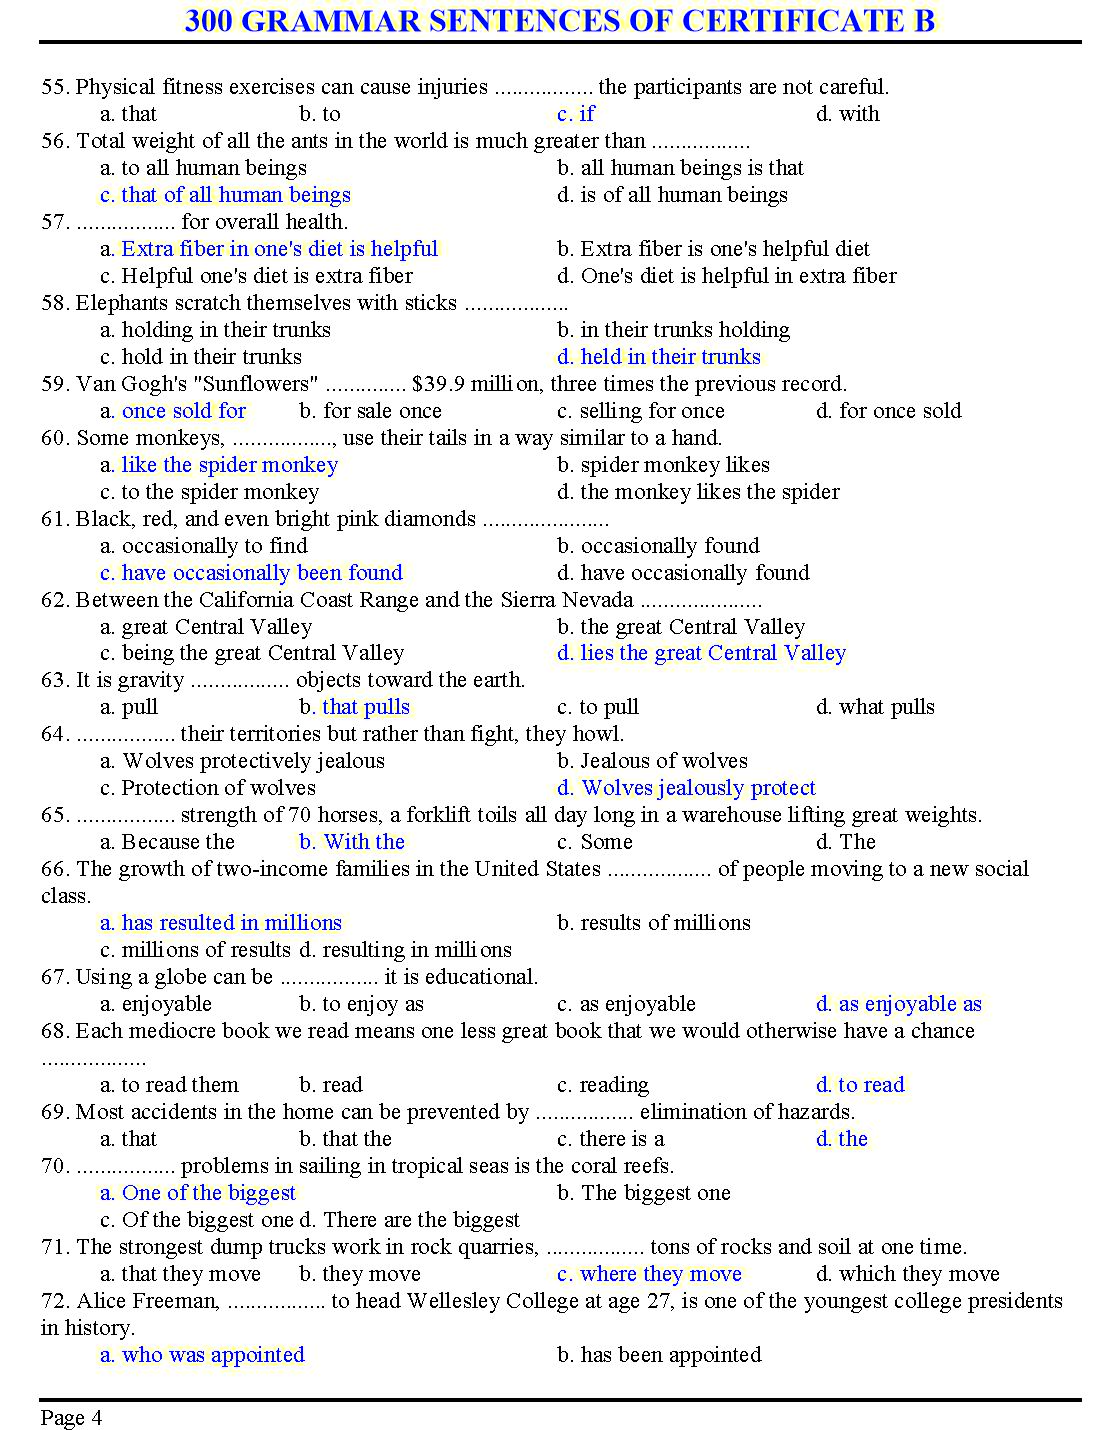 300 grammar sentences of certificate B trang 4